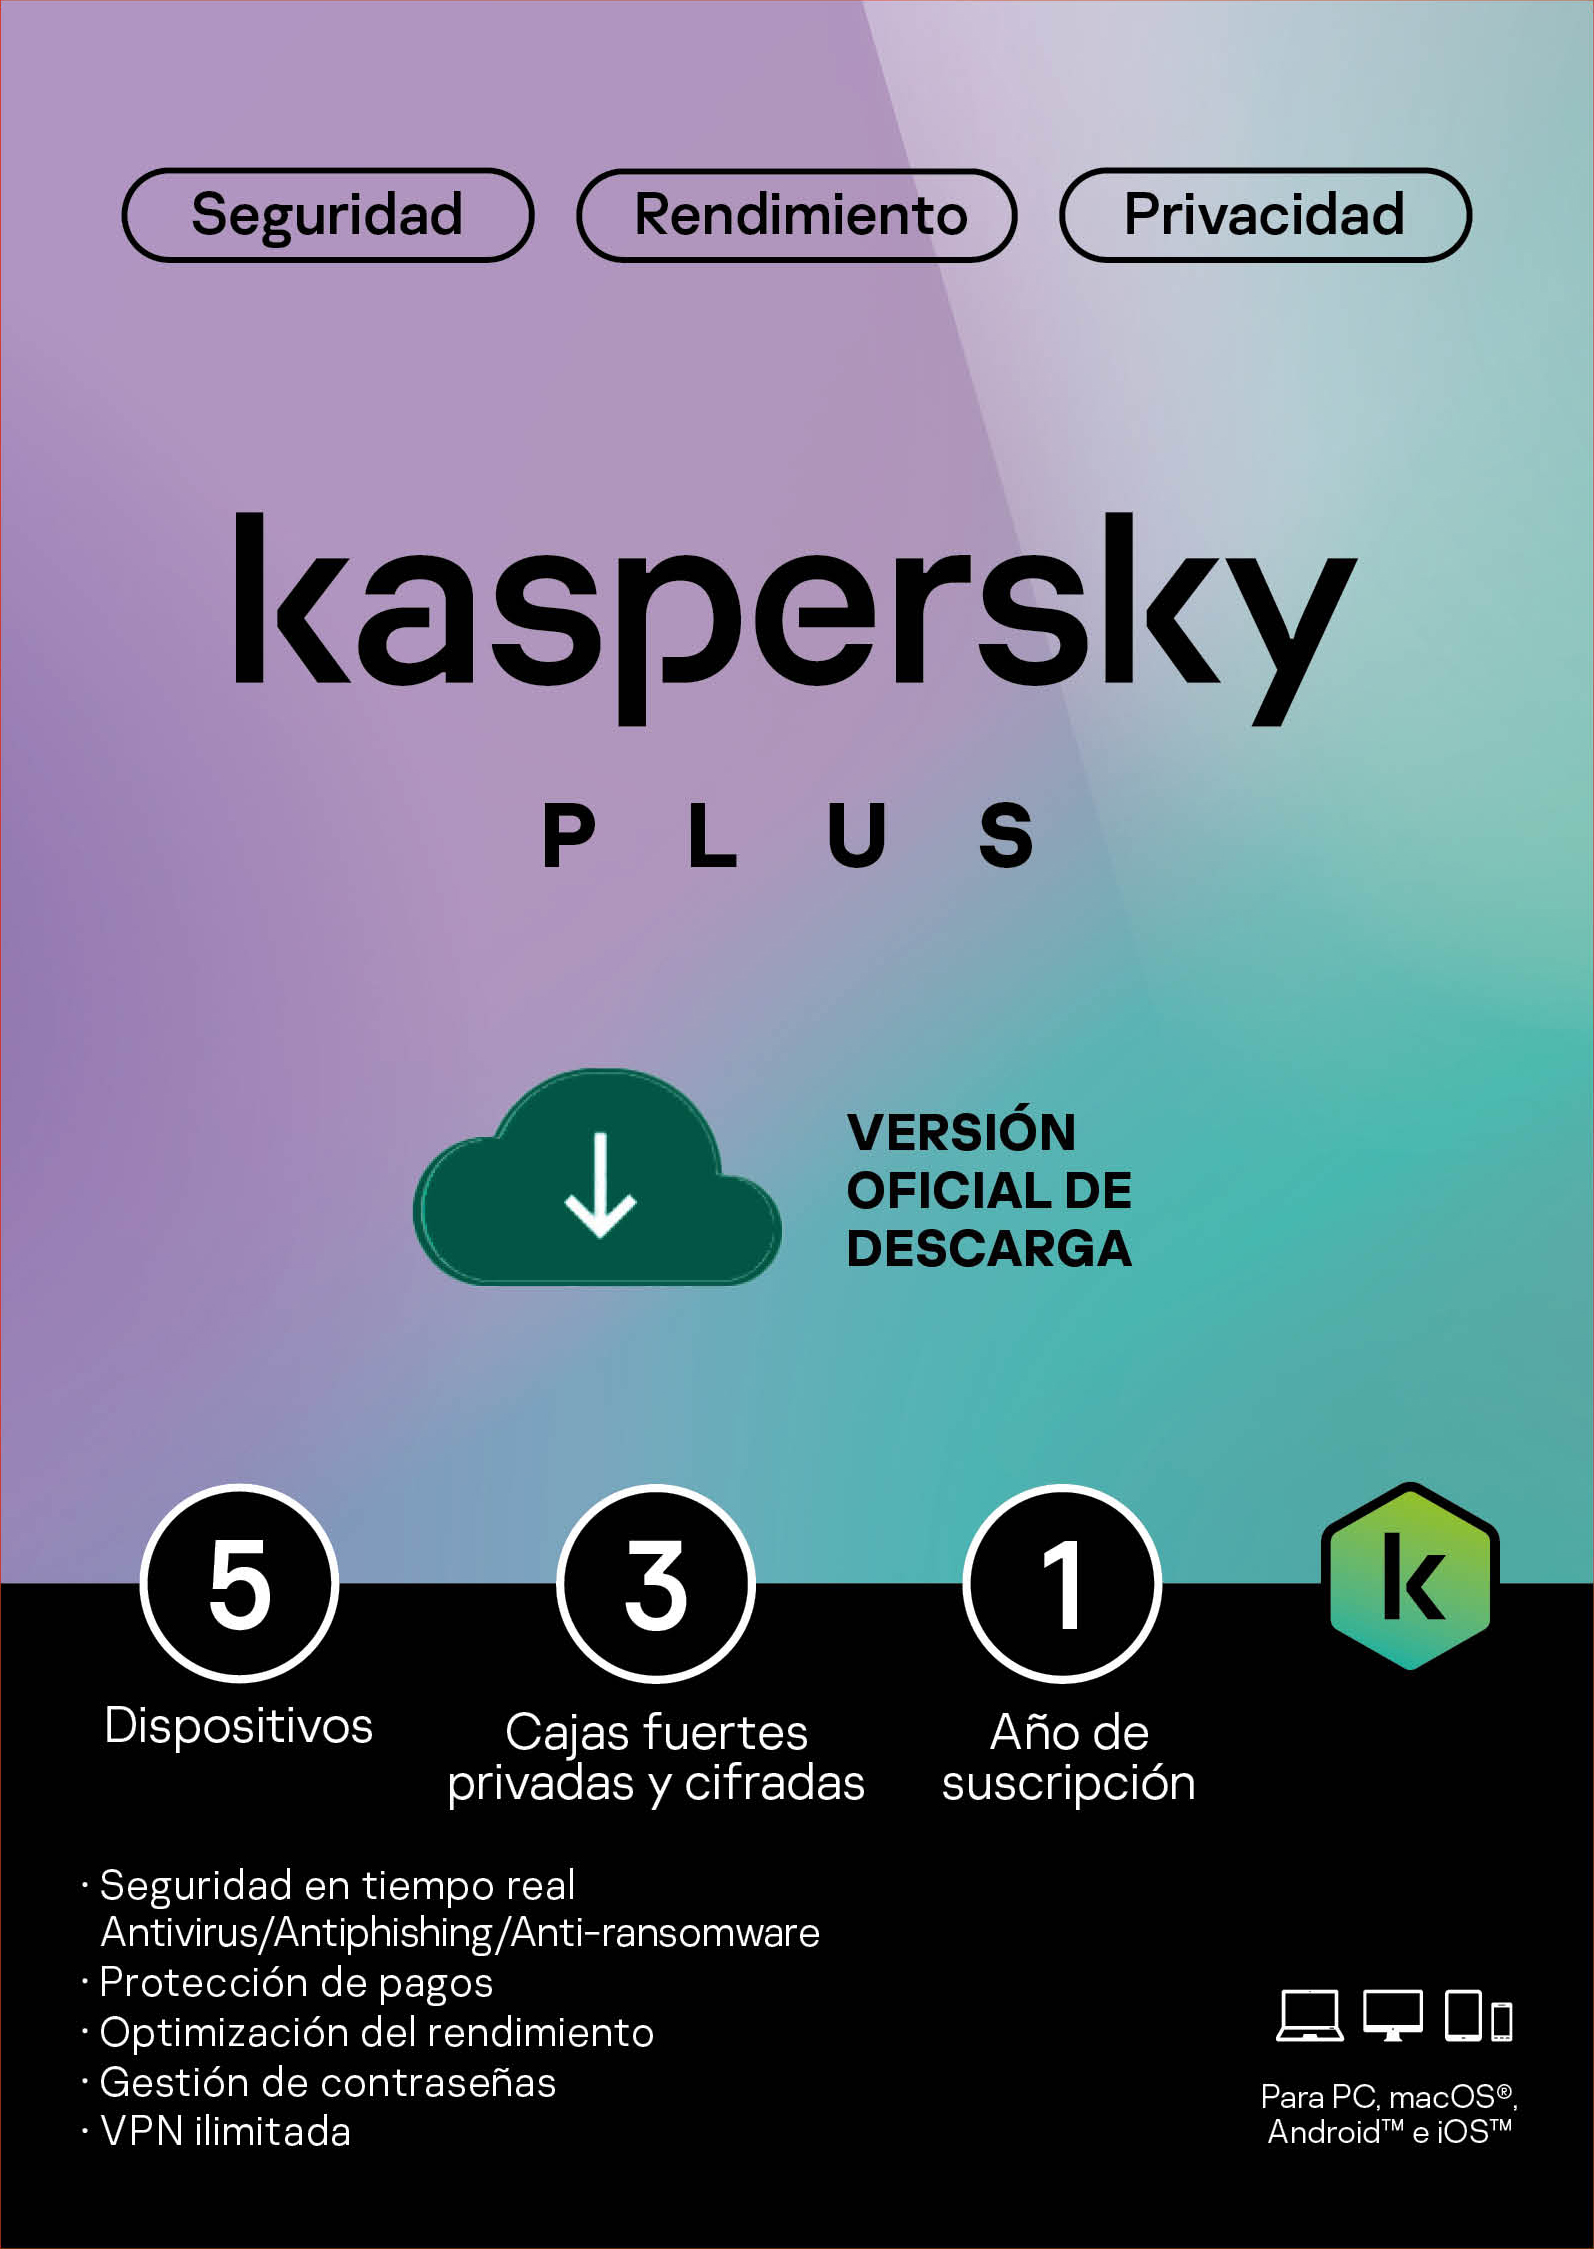 Licencia Kaspersky Plus 5 dispositivos por 1 año